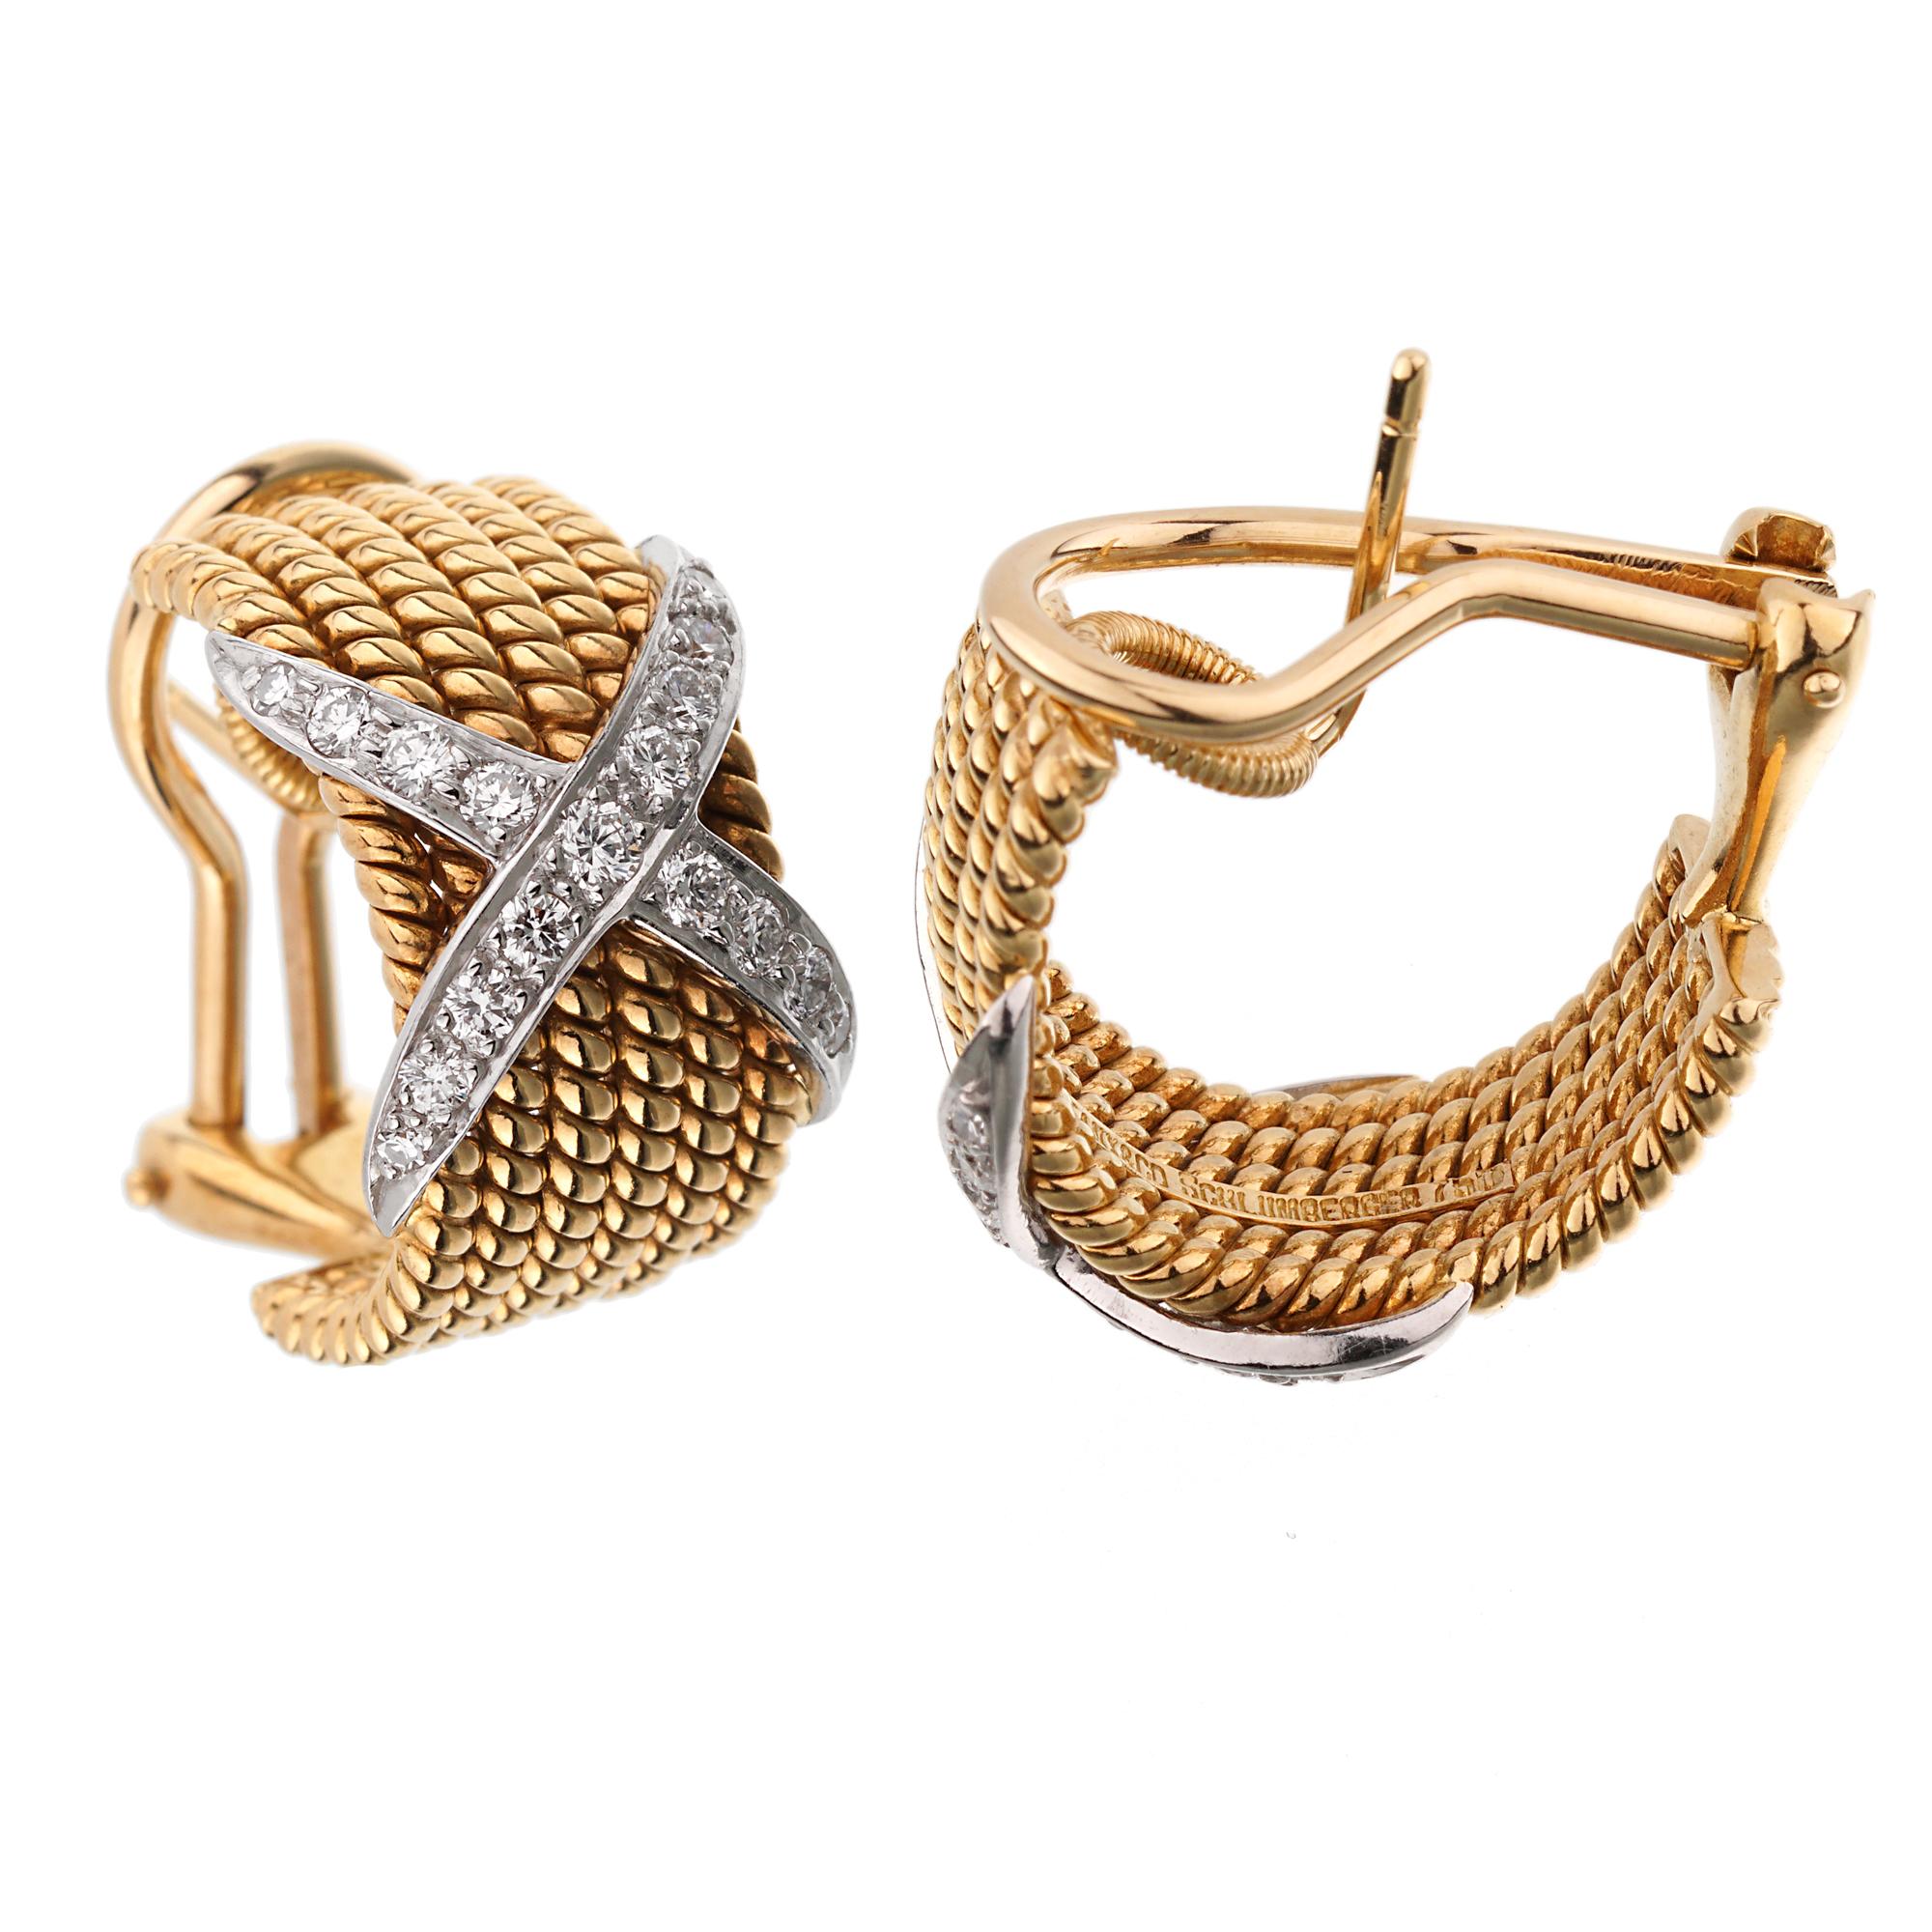 Ein ikonisches Set von Tiffany & Co-Ohrringen von Jean Schlumberger mit 6 Seilen aus Gelbgold und einem X-Motiv, das mit den feinsten Diamanten von Tiffany & Co in Platin gefasst ist. 

Die Ohrringe messen 0,47